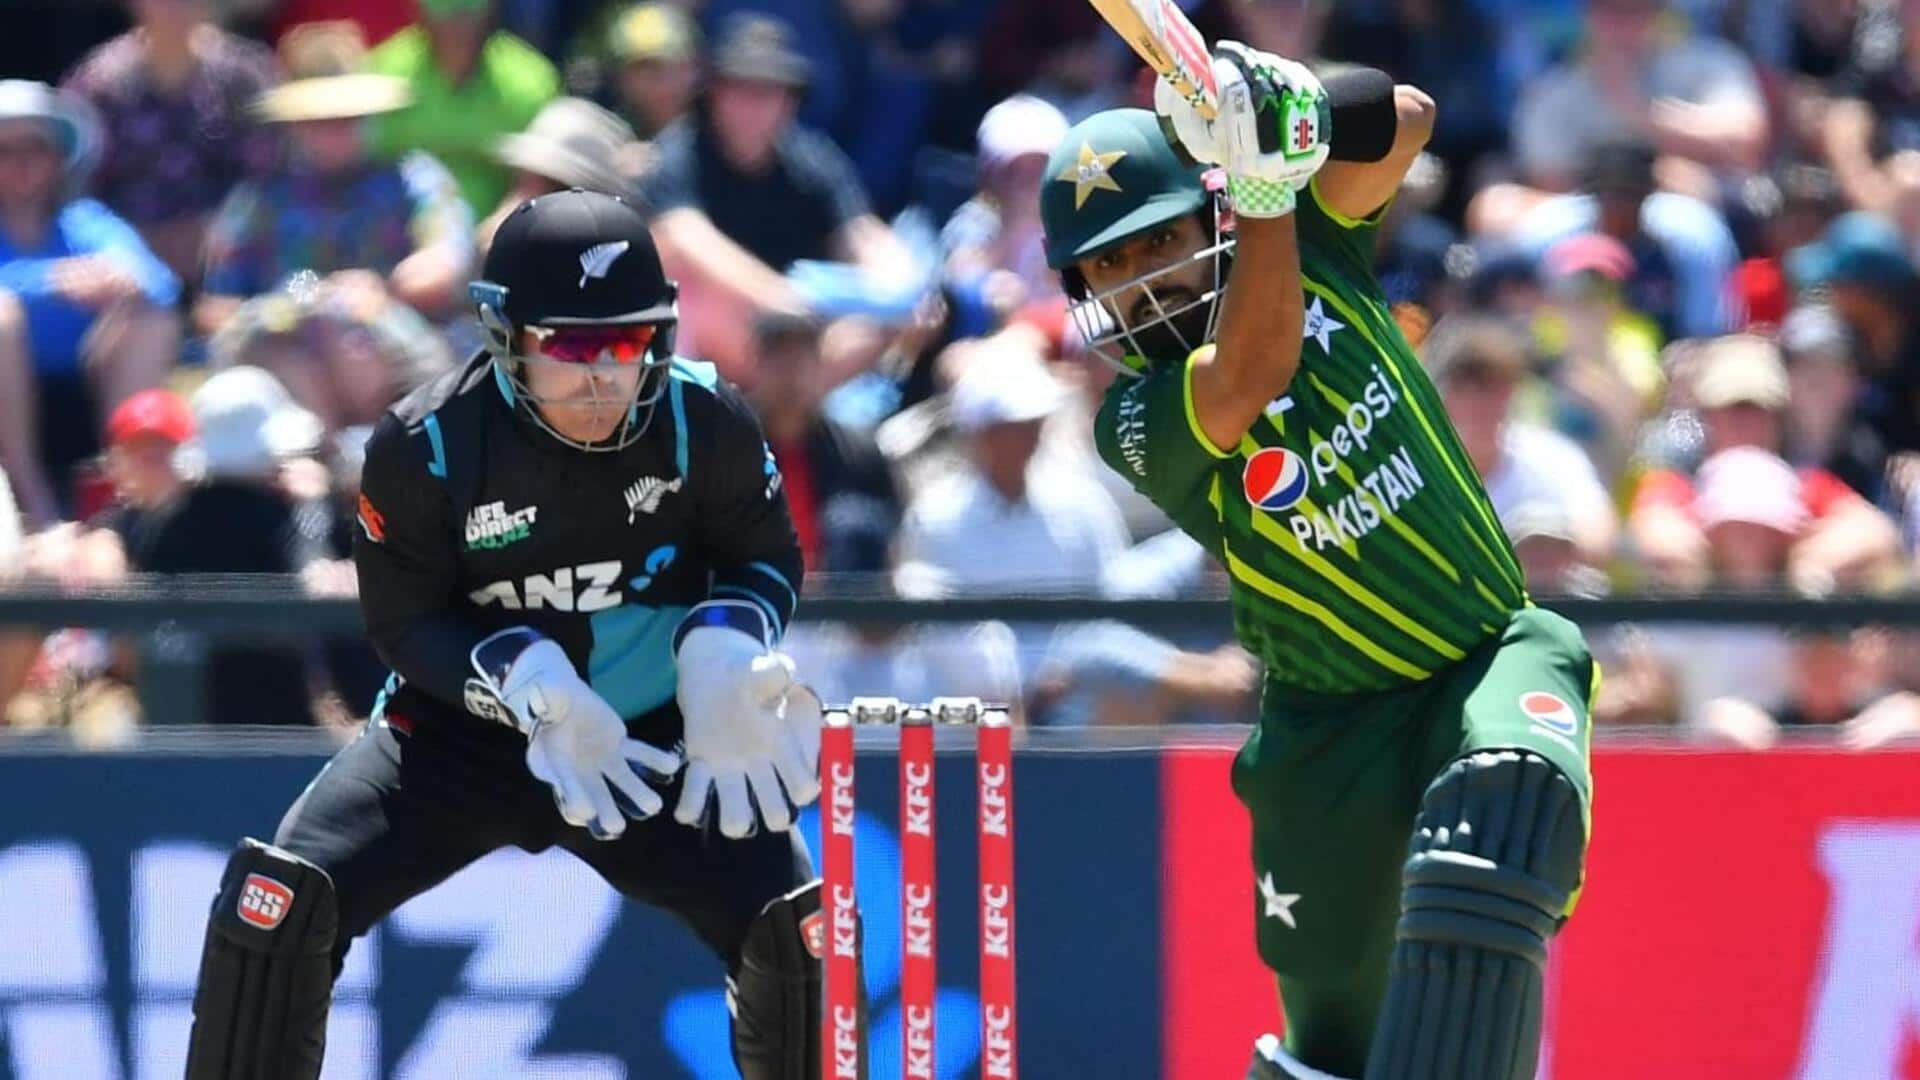 न्यूजीलैंड क्रिकेट टीम अप्रैल में करेगी पाकिस्तान का दौरा, खेलेगी 5 टी-20 मैचों की सीरीज